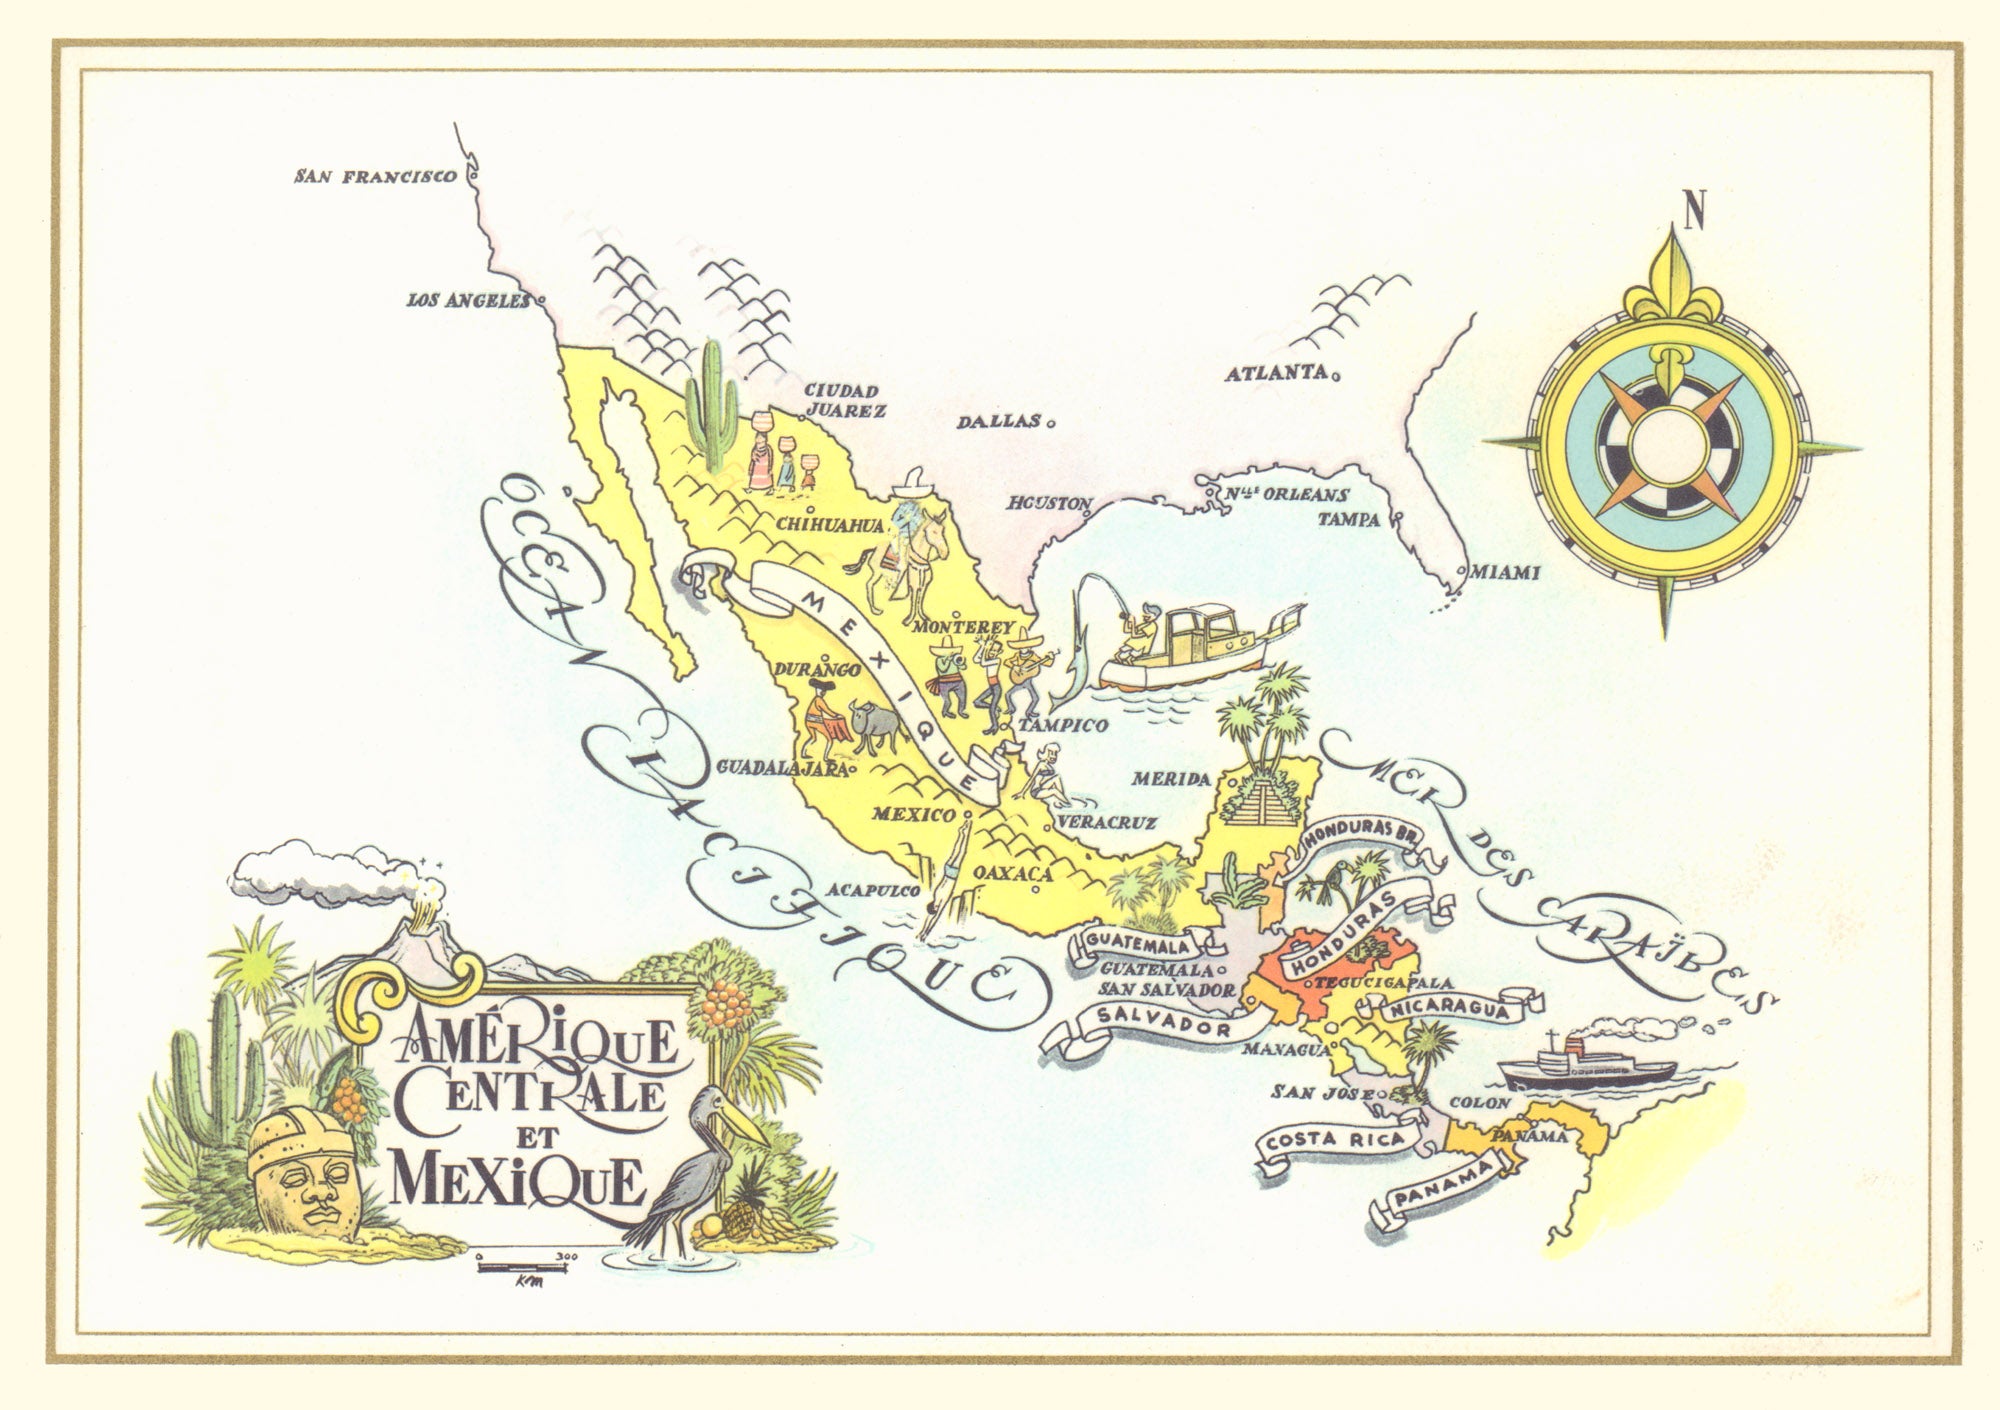 Pan American Amerique Centrale et Mexico 1960s Jacques Liozu Map menu art